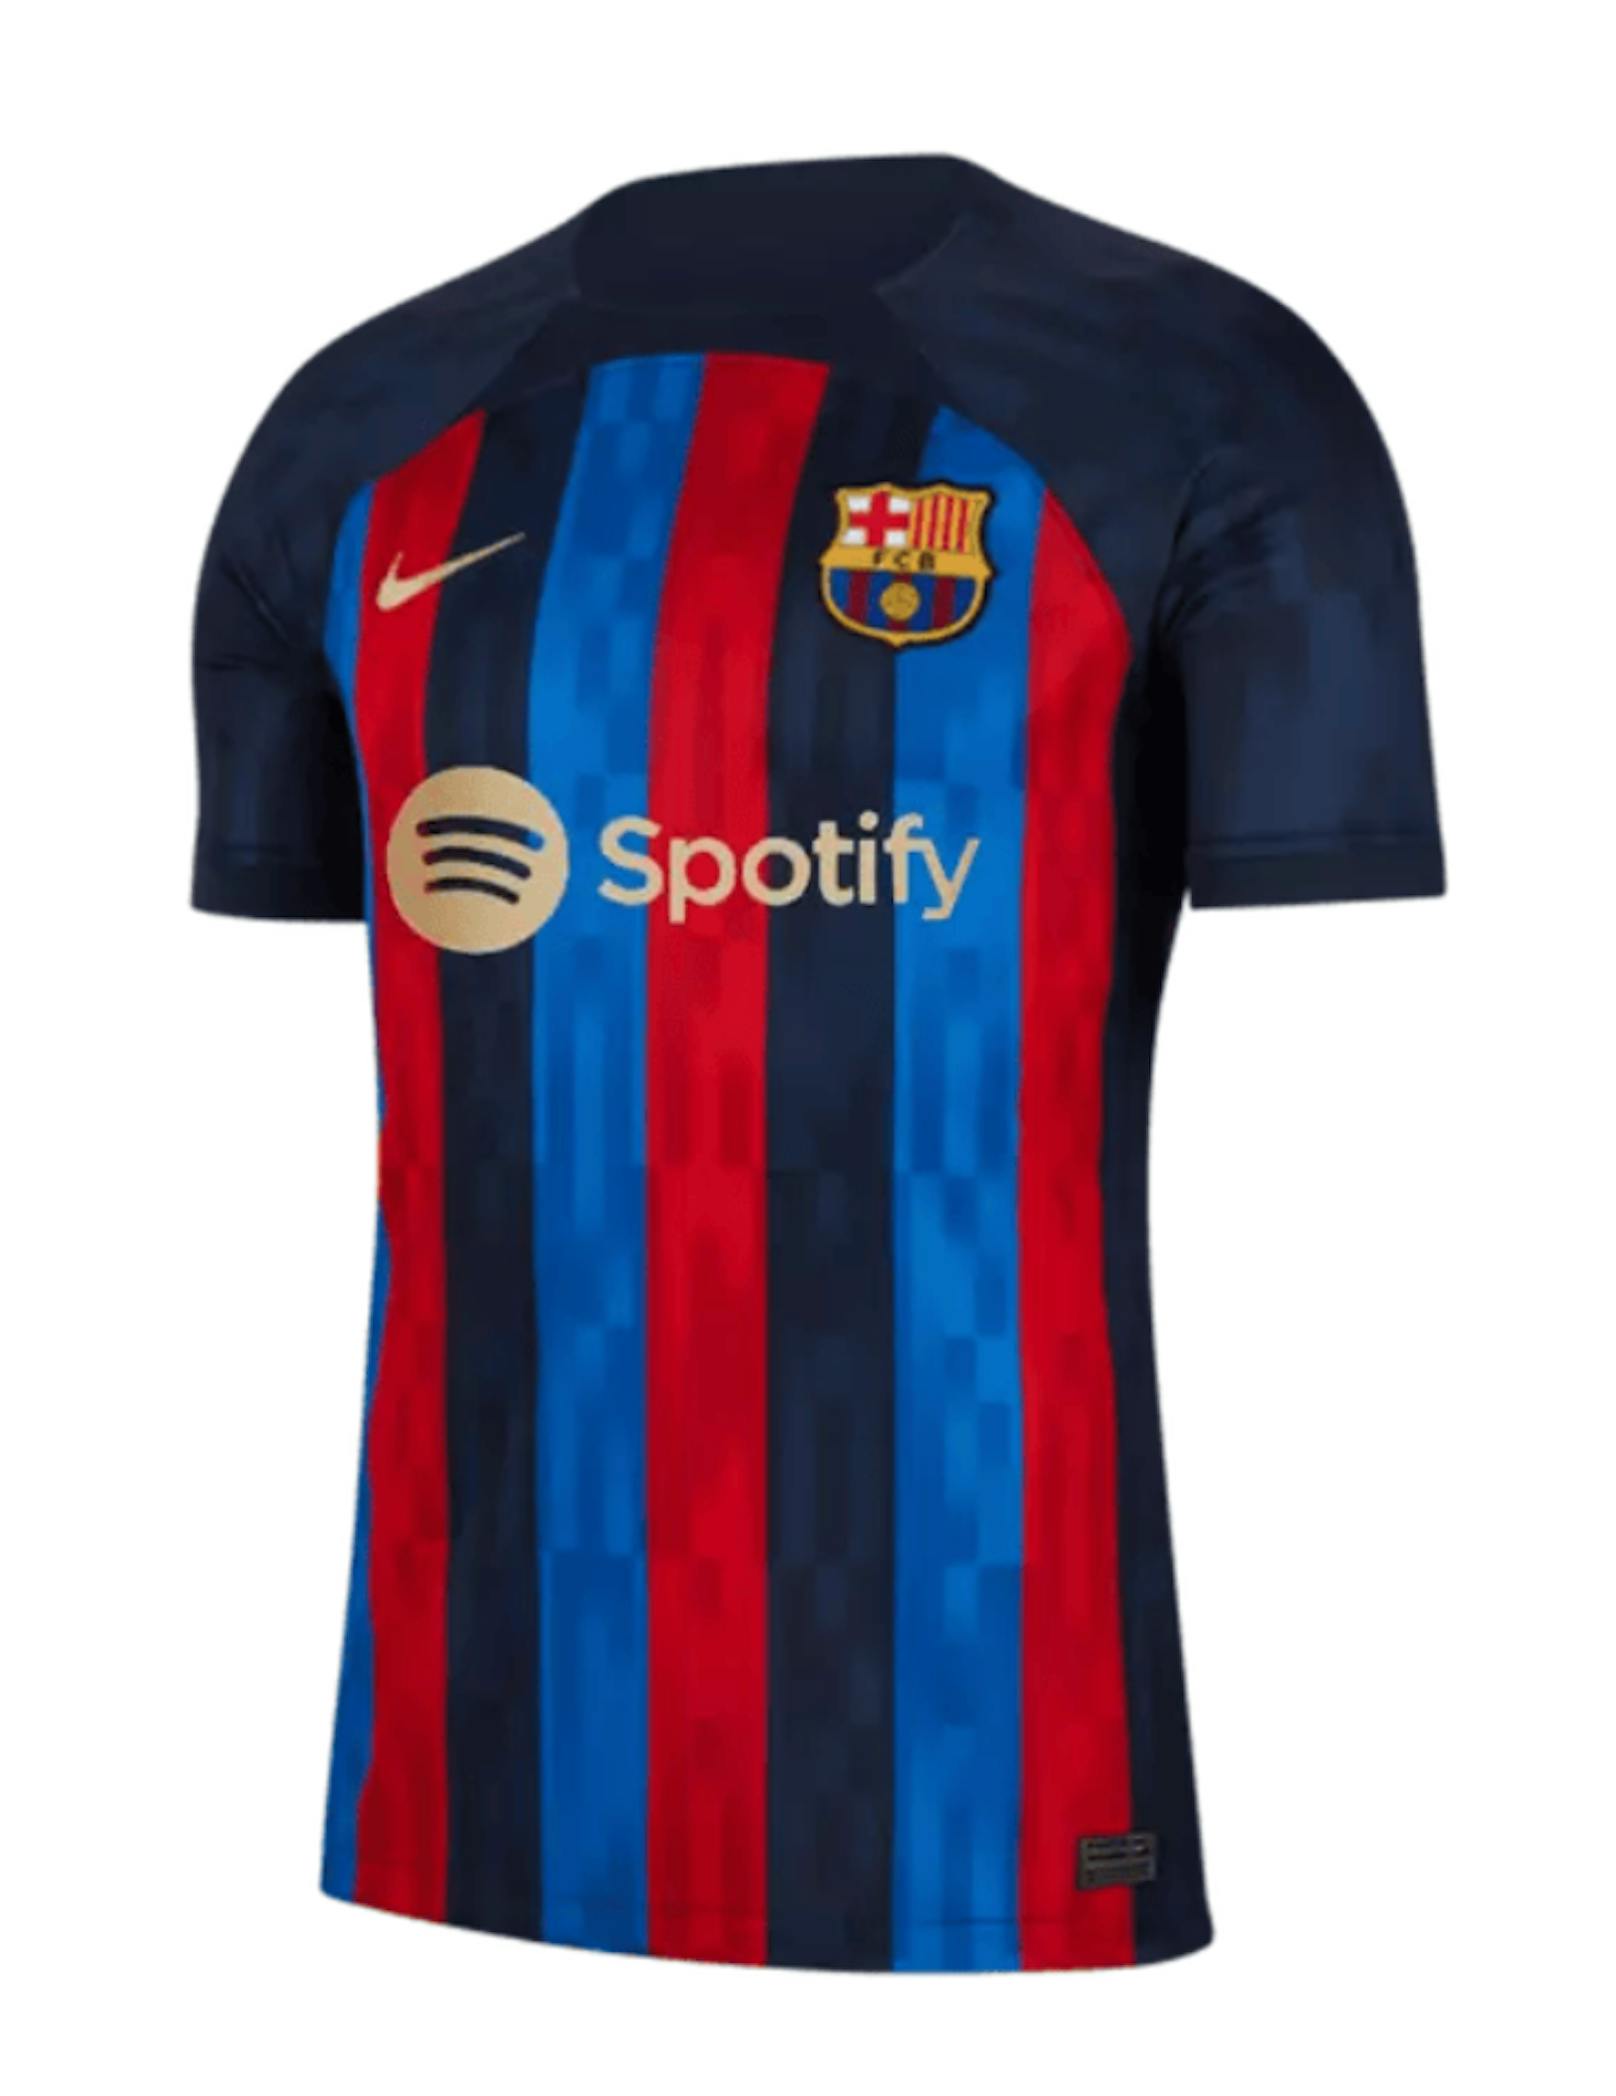 Neuer Brustsponsor, alte Farben. Das Design des Heimtrikots von Barca ist für viele Fans aber gewöhnungsbedürftig.